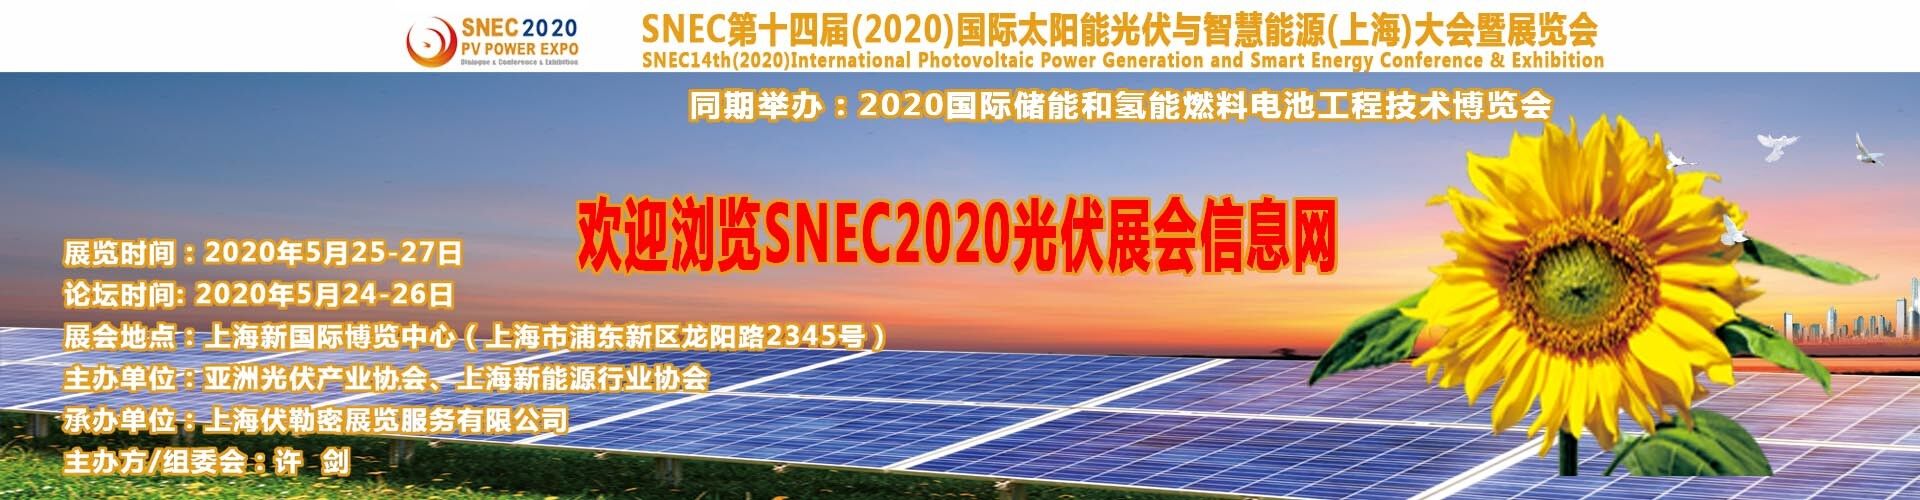 2018年5月上海*太陽能展覽會